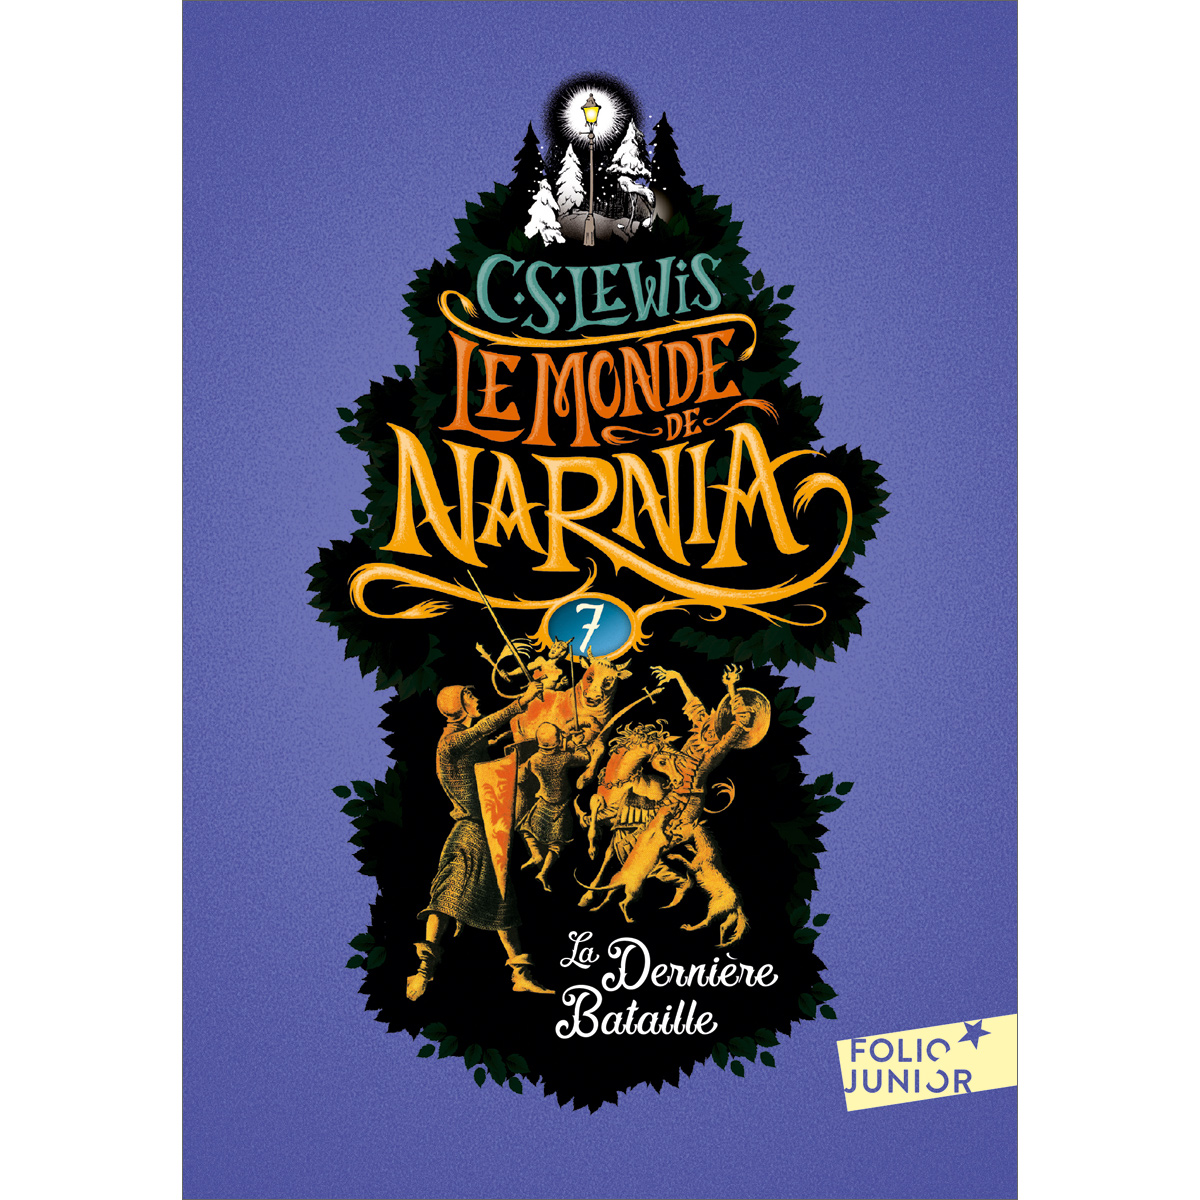 Le Monde de Narnia (7) - La Dernière Bataille